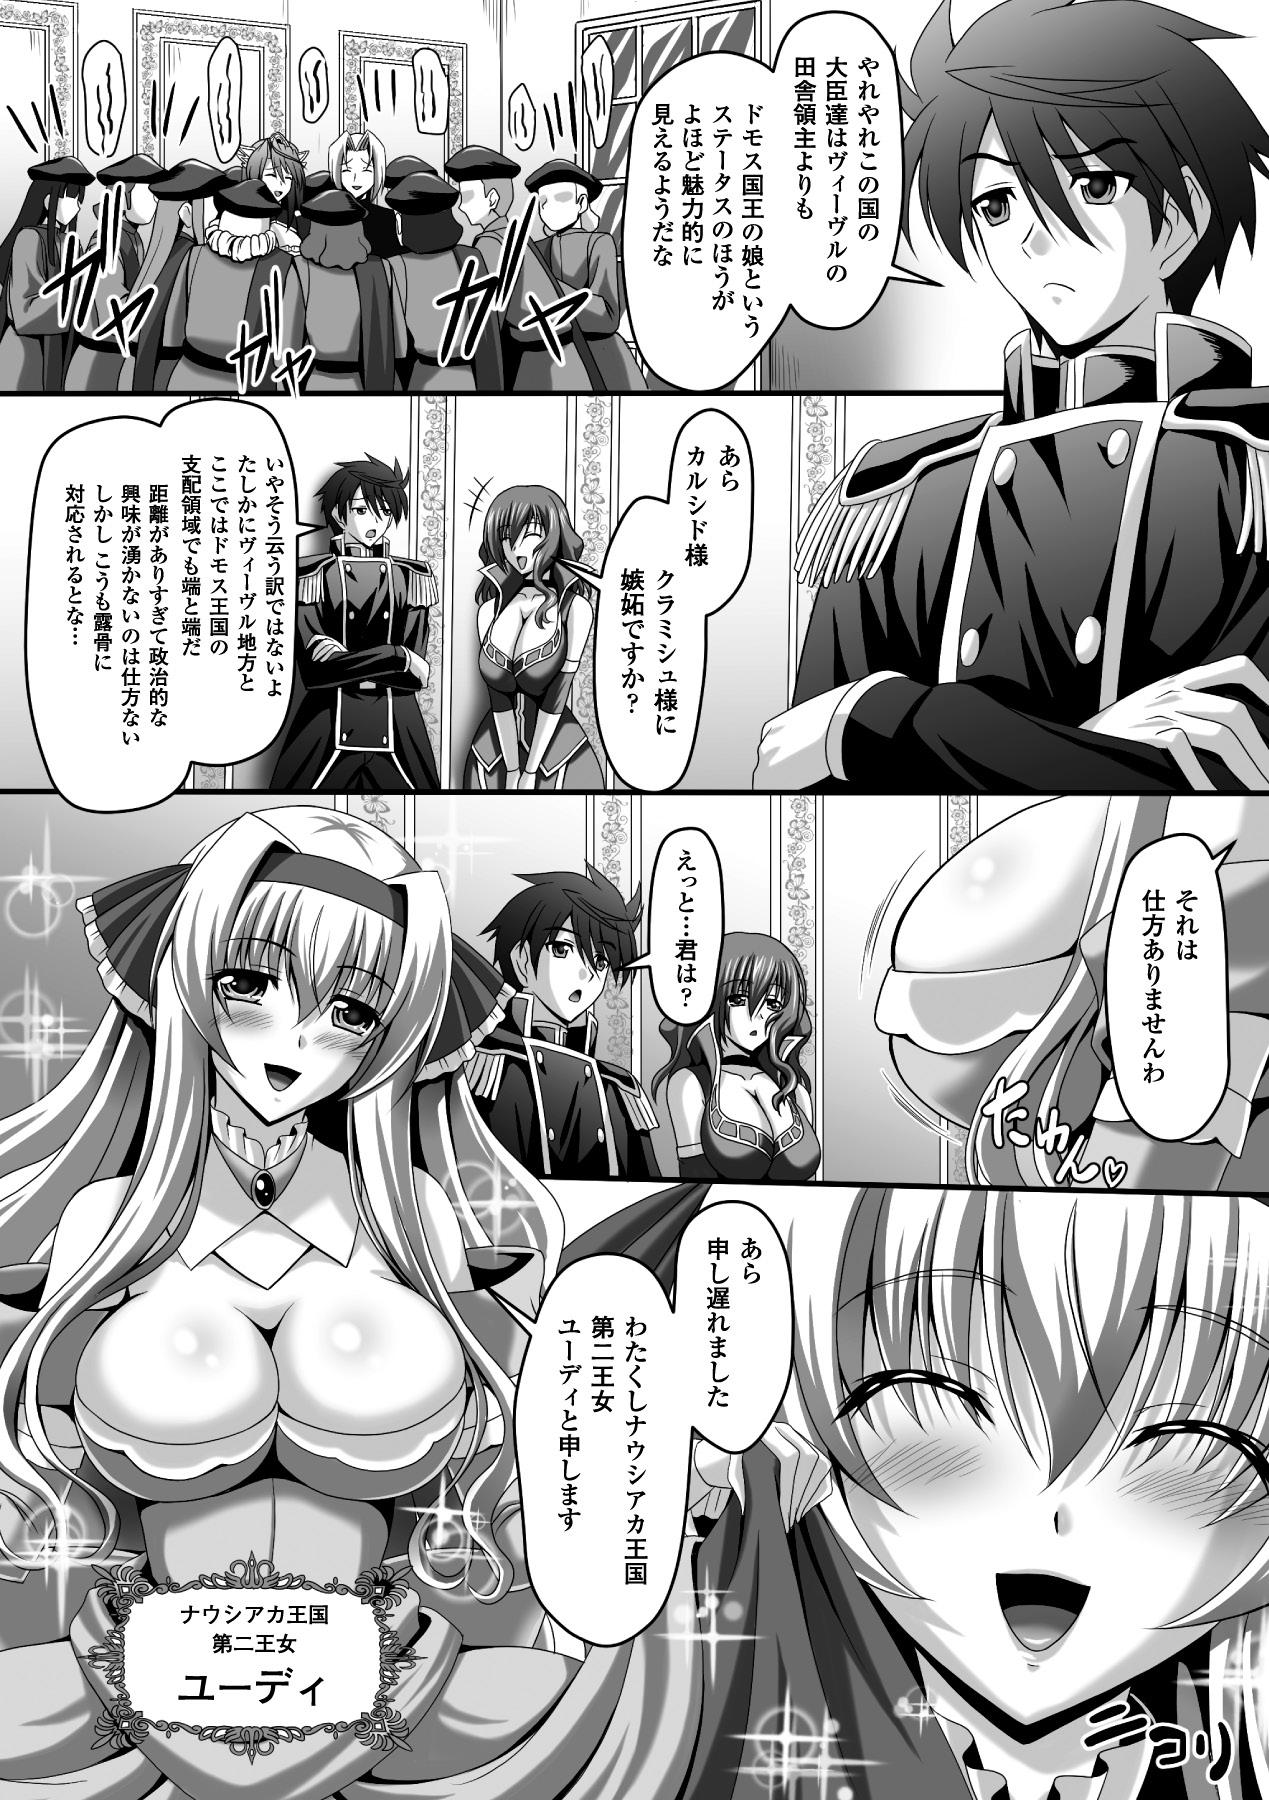 Mas Megami Crisis 14 - Taimanin asagi Culo Grande - Page 7